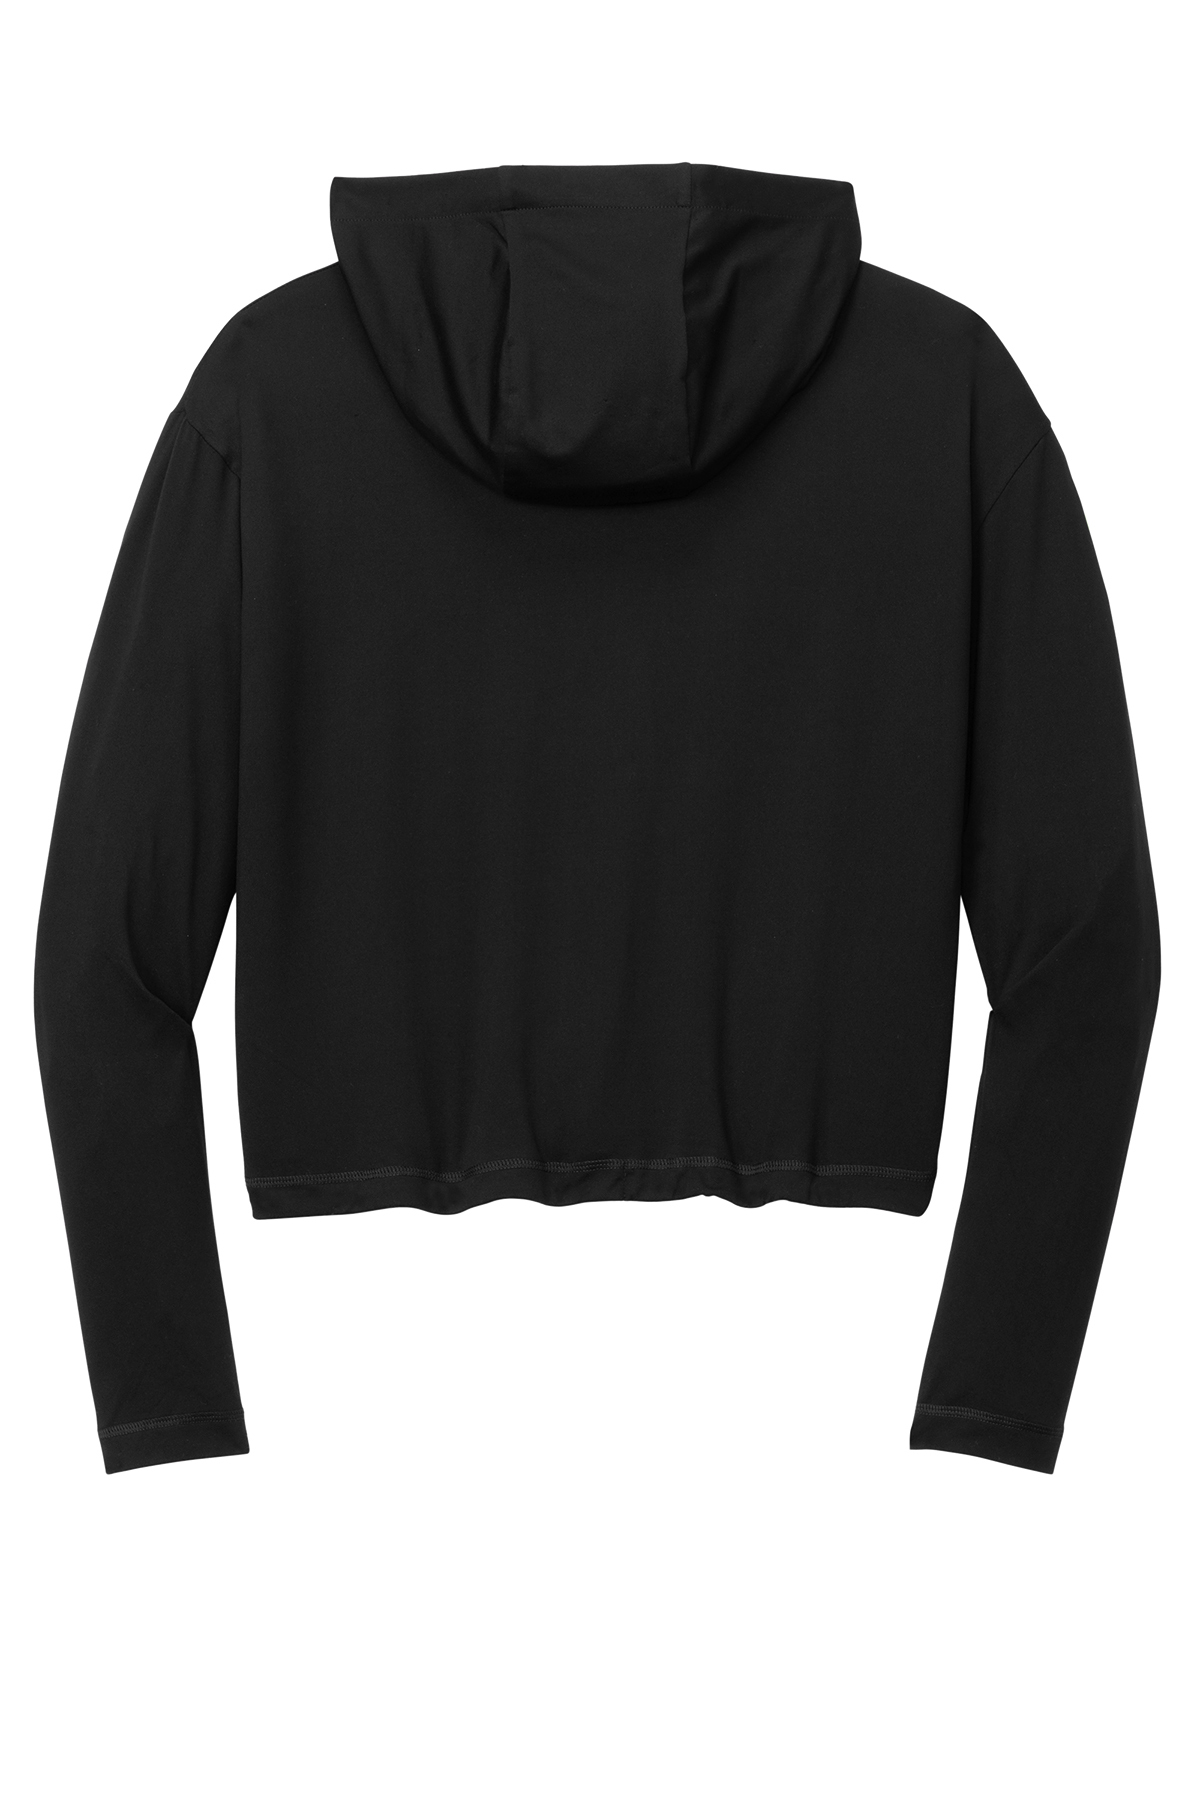 New Era Ladies Power Long Sleeve Hoodie | Product | SanMar